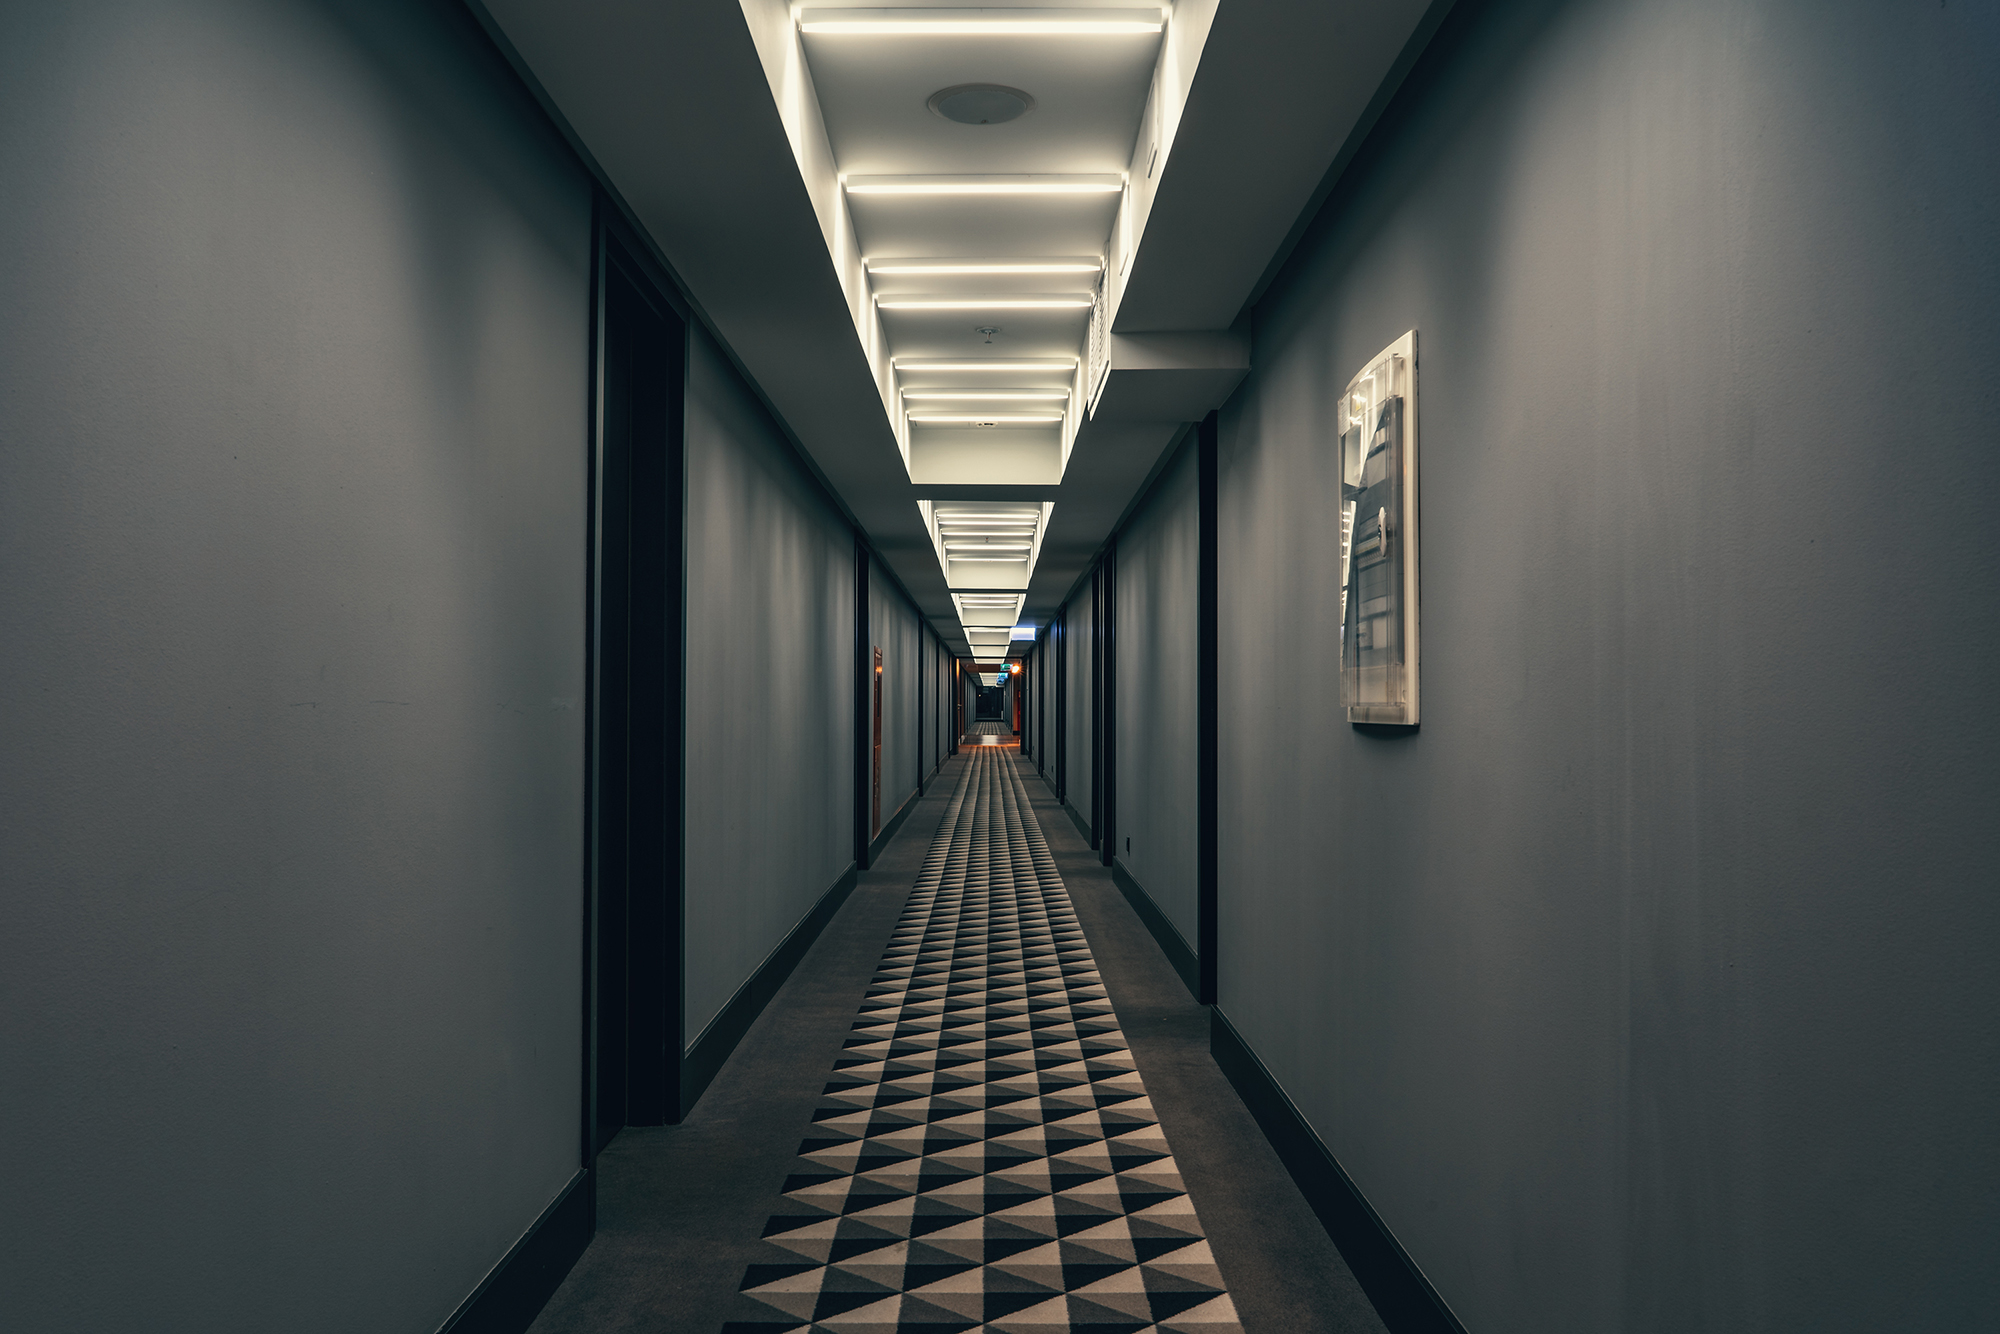 Длинный безлюдный коридор — почти эталонный пример лиминального пространства. Источник: DedMityay / Shutterstock